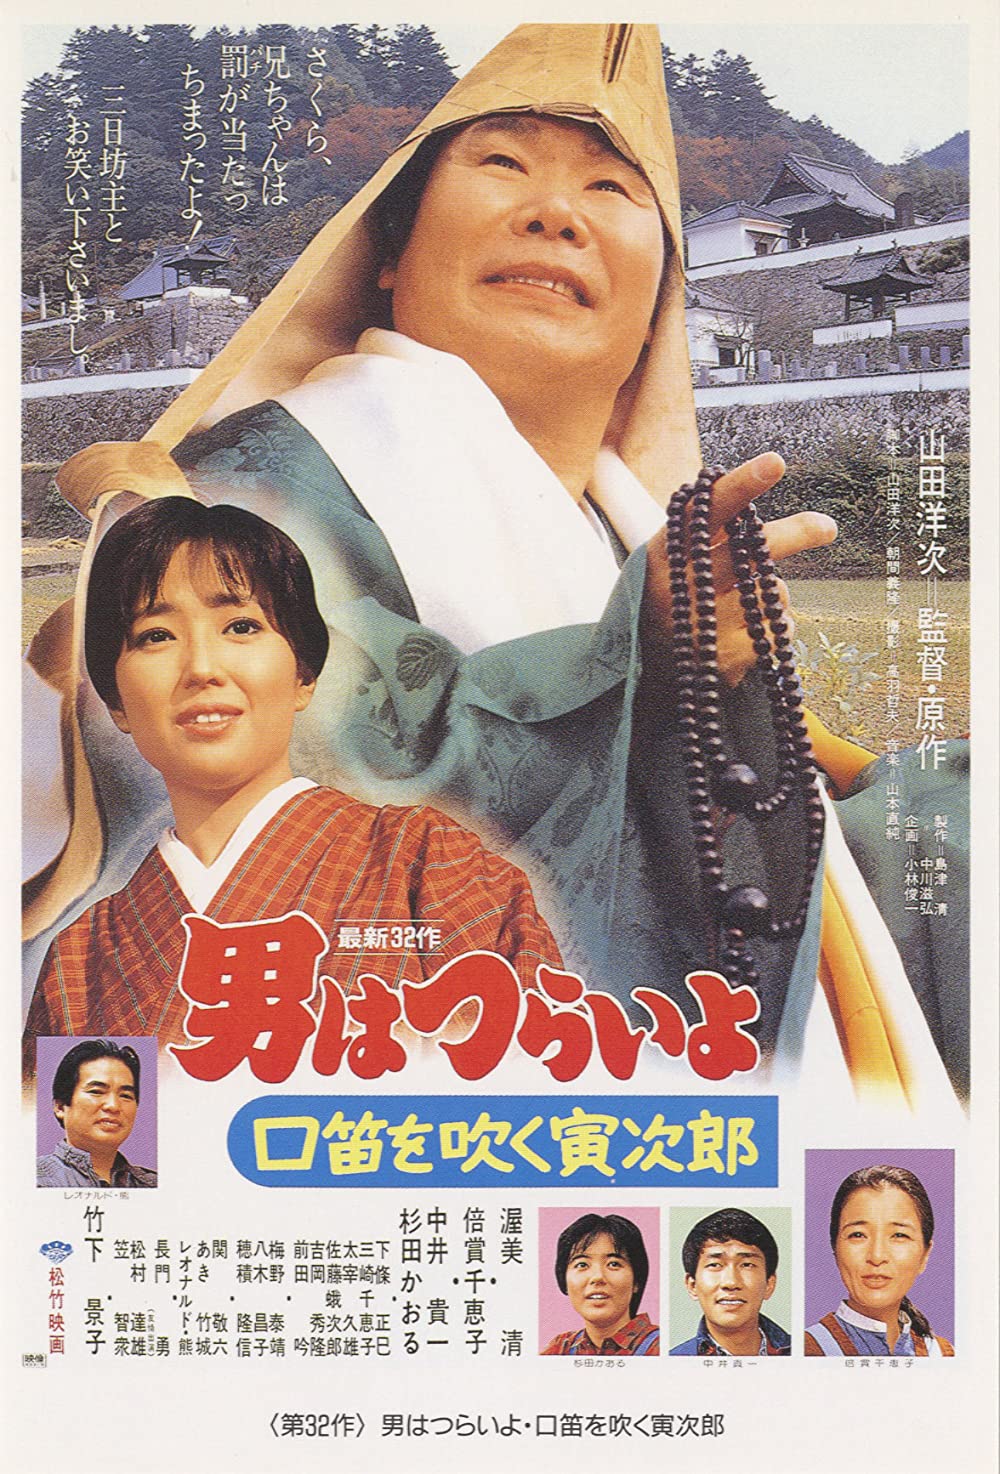 دانلود فیلم Otoko wa tsurai yo: Kuchibue wo fuku Torajirô 1983